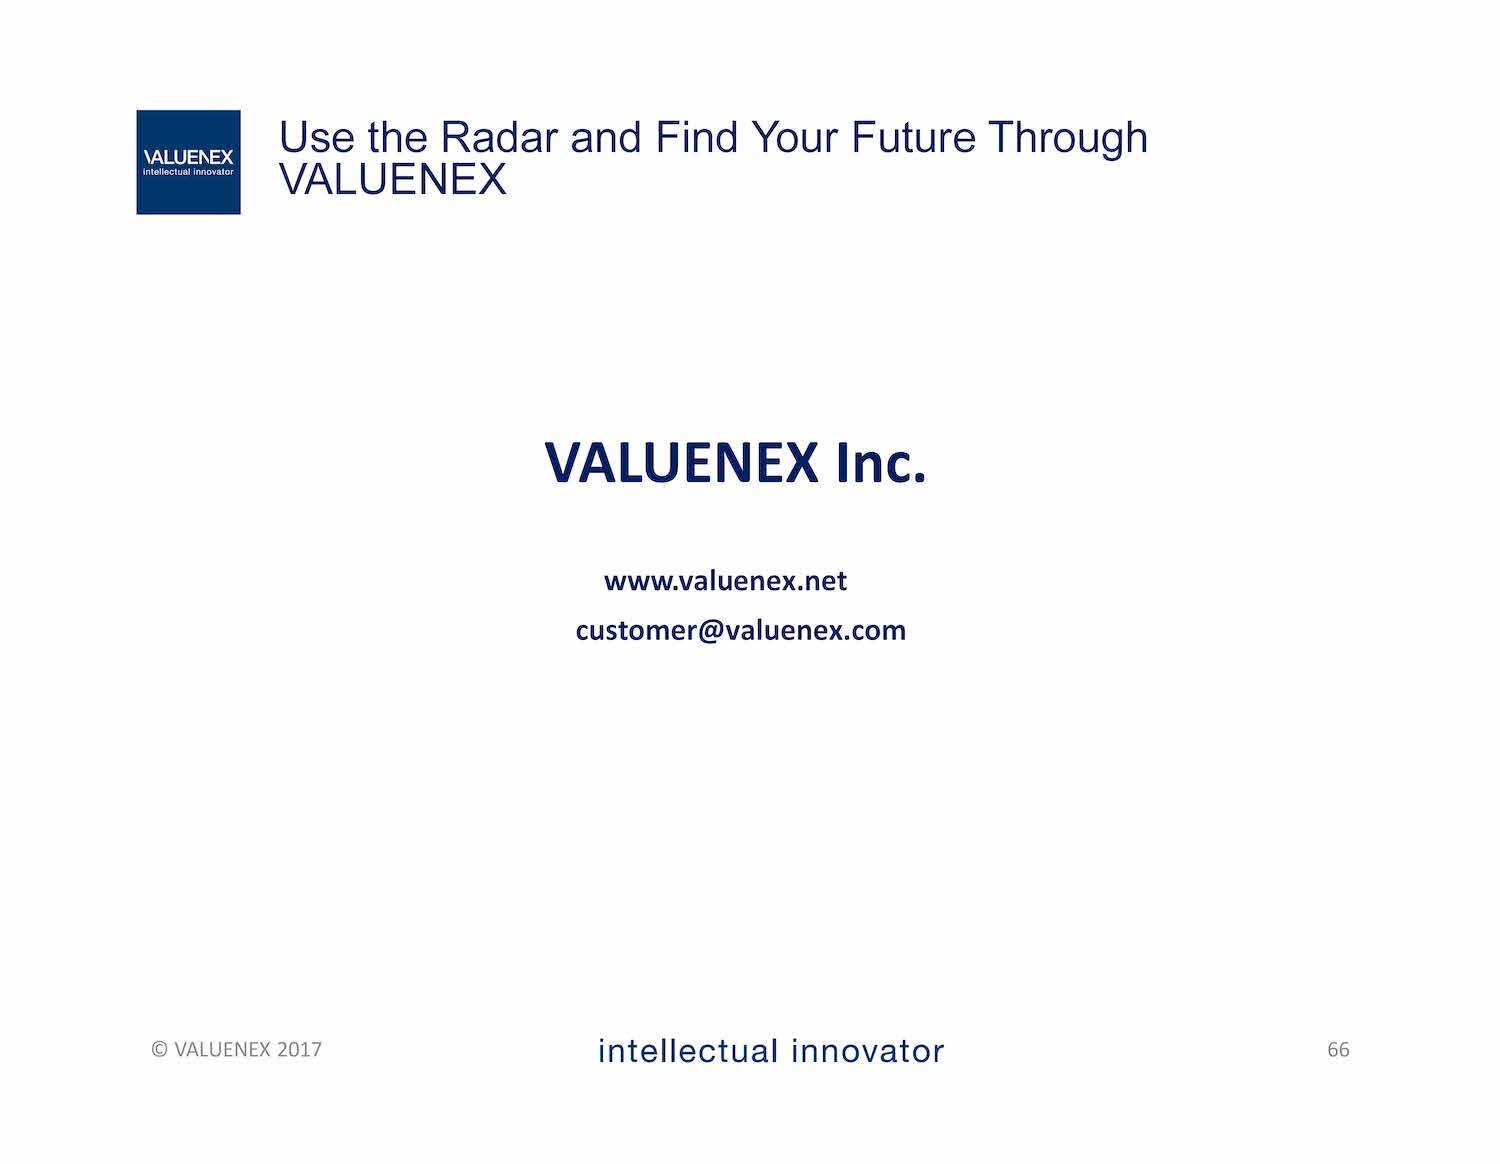 VALUENEX-Skadden Seminar_Page_66.jpg